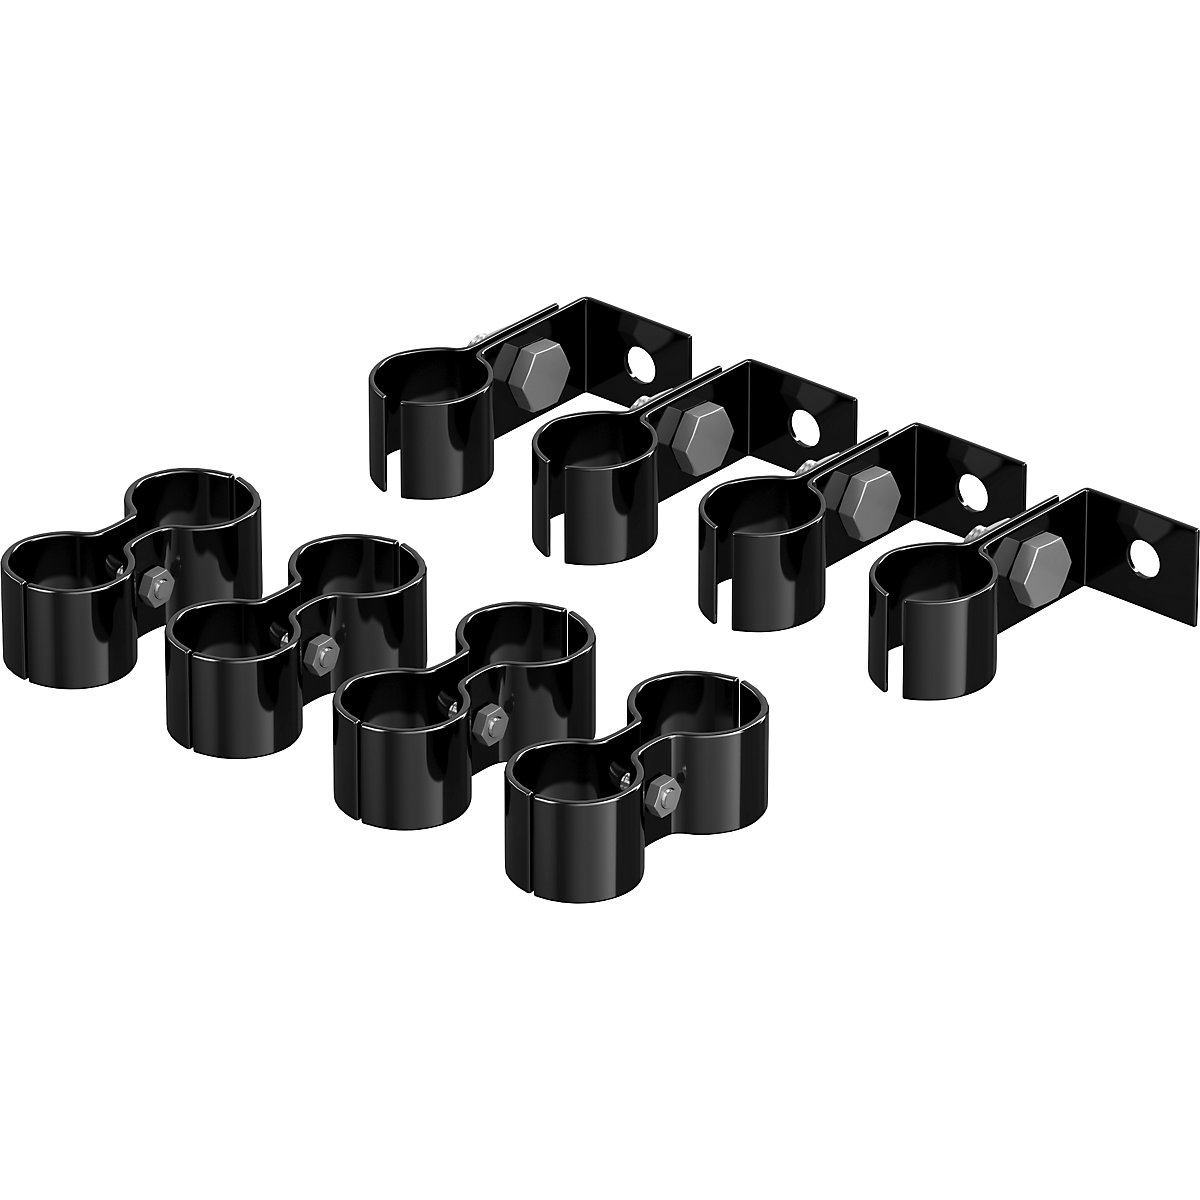 Készlet összekötő kapcsokkal és fali rögzítésekkel, 2 x 4 db, fekete-2